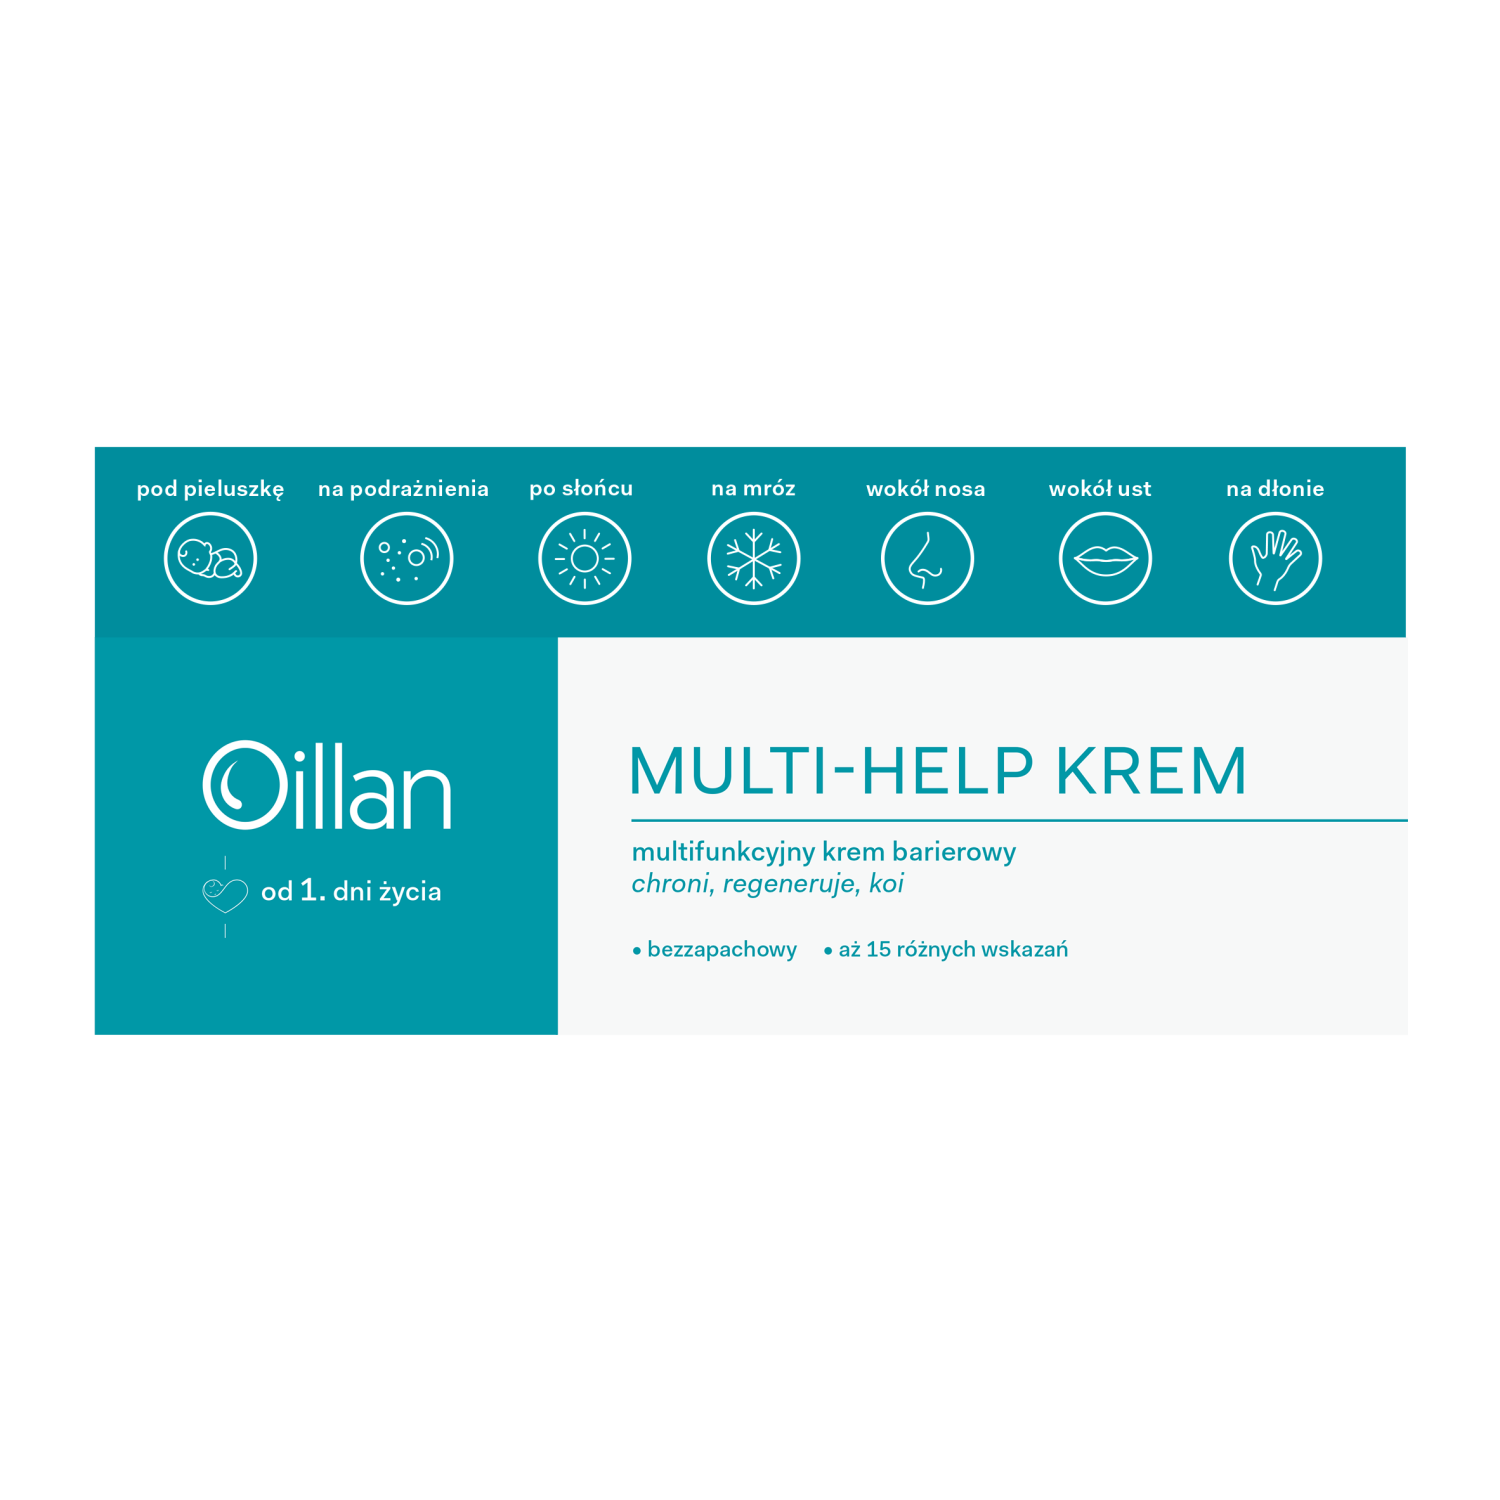 цена Многофункциональный барьерный крем для лица Oillan Multi-Help, 50 мл